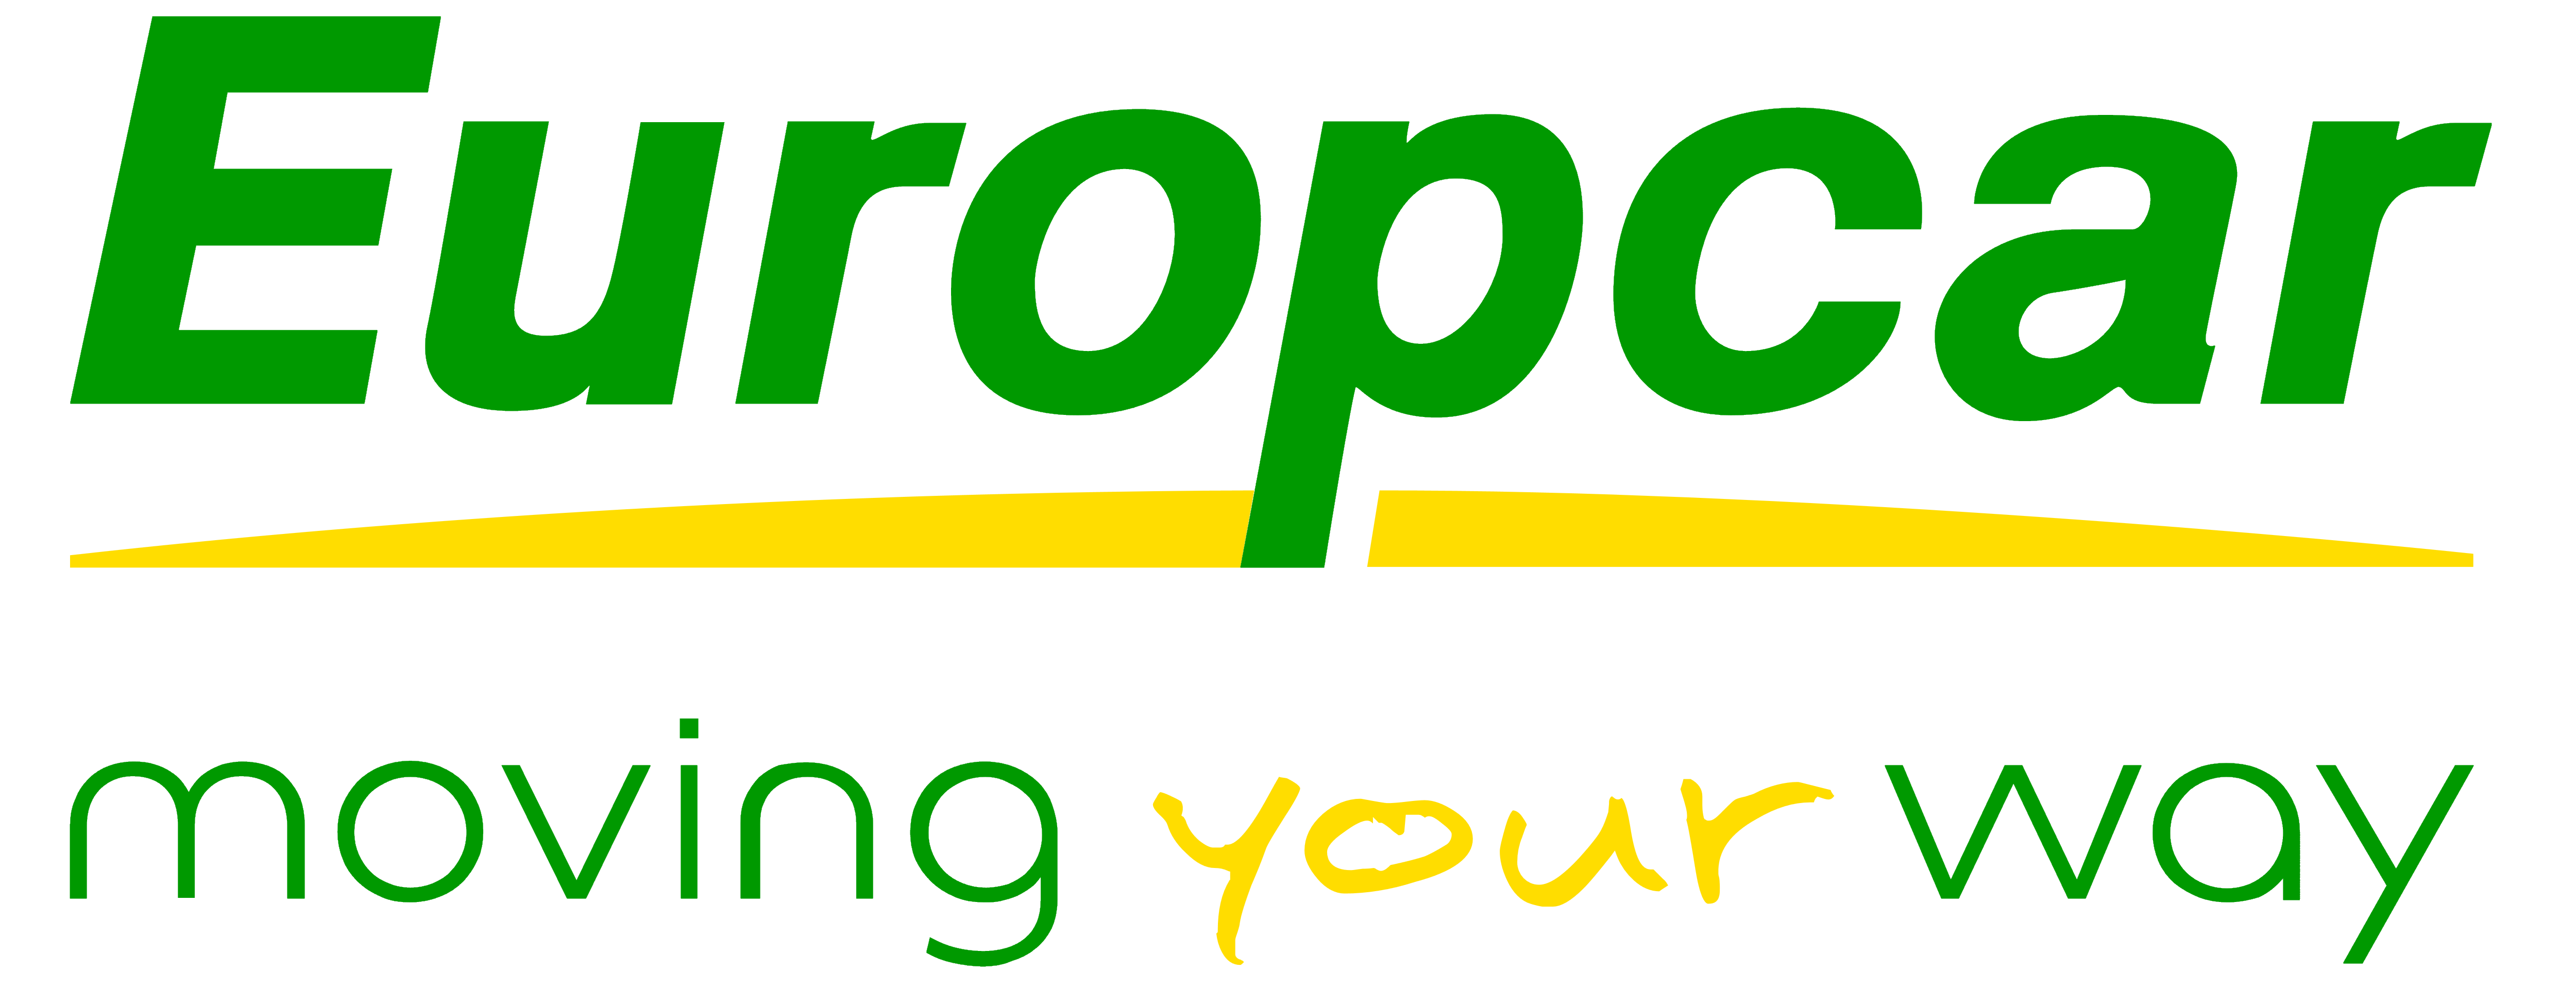 Descuentos Europcar